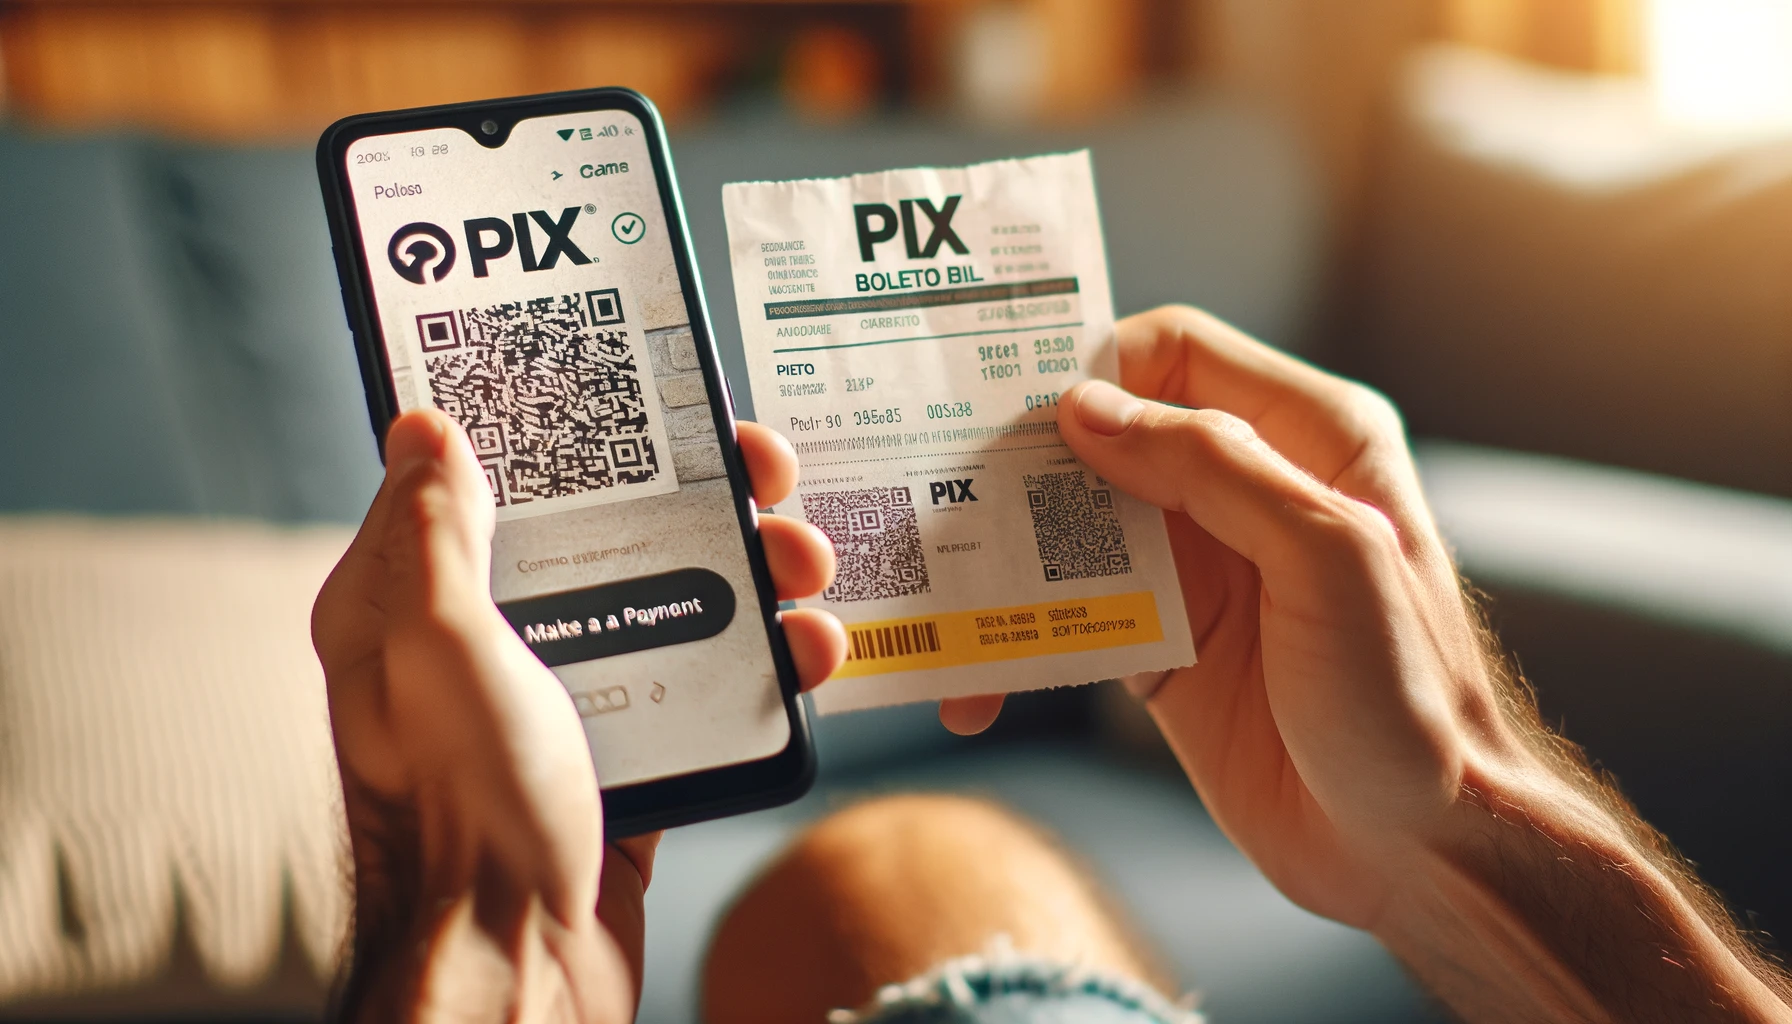 Pagamento de boleto via Pix no smartphone